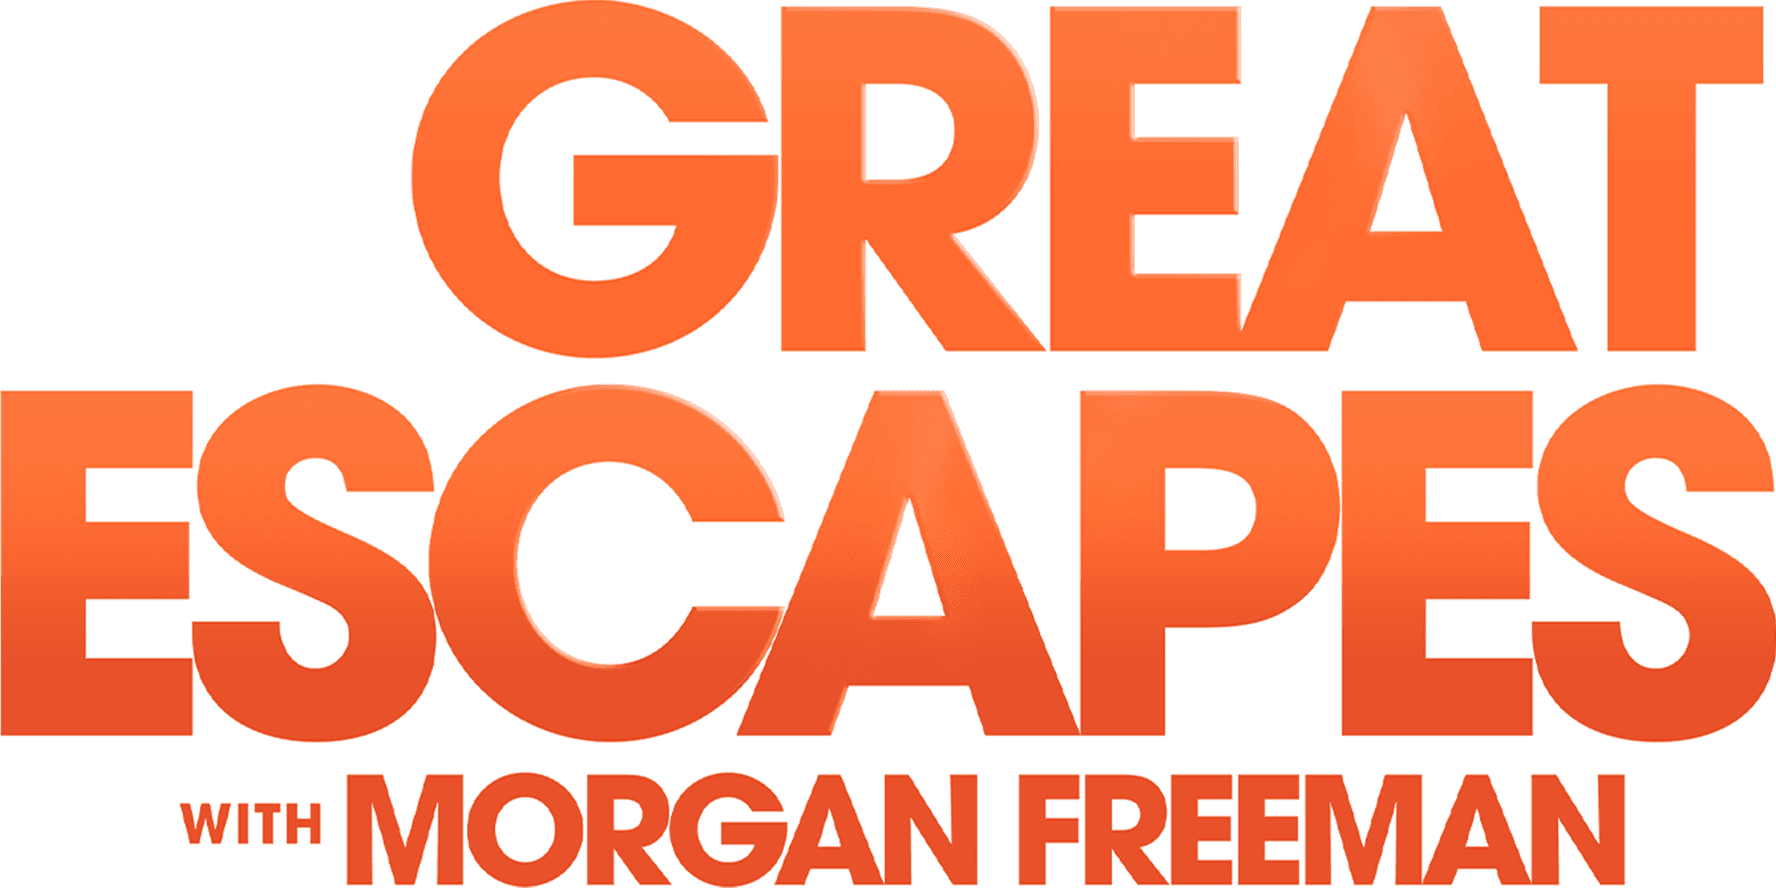 Great Escapes with Morgan Freeman logo